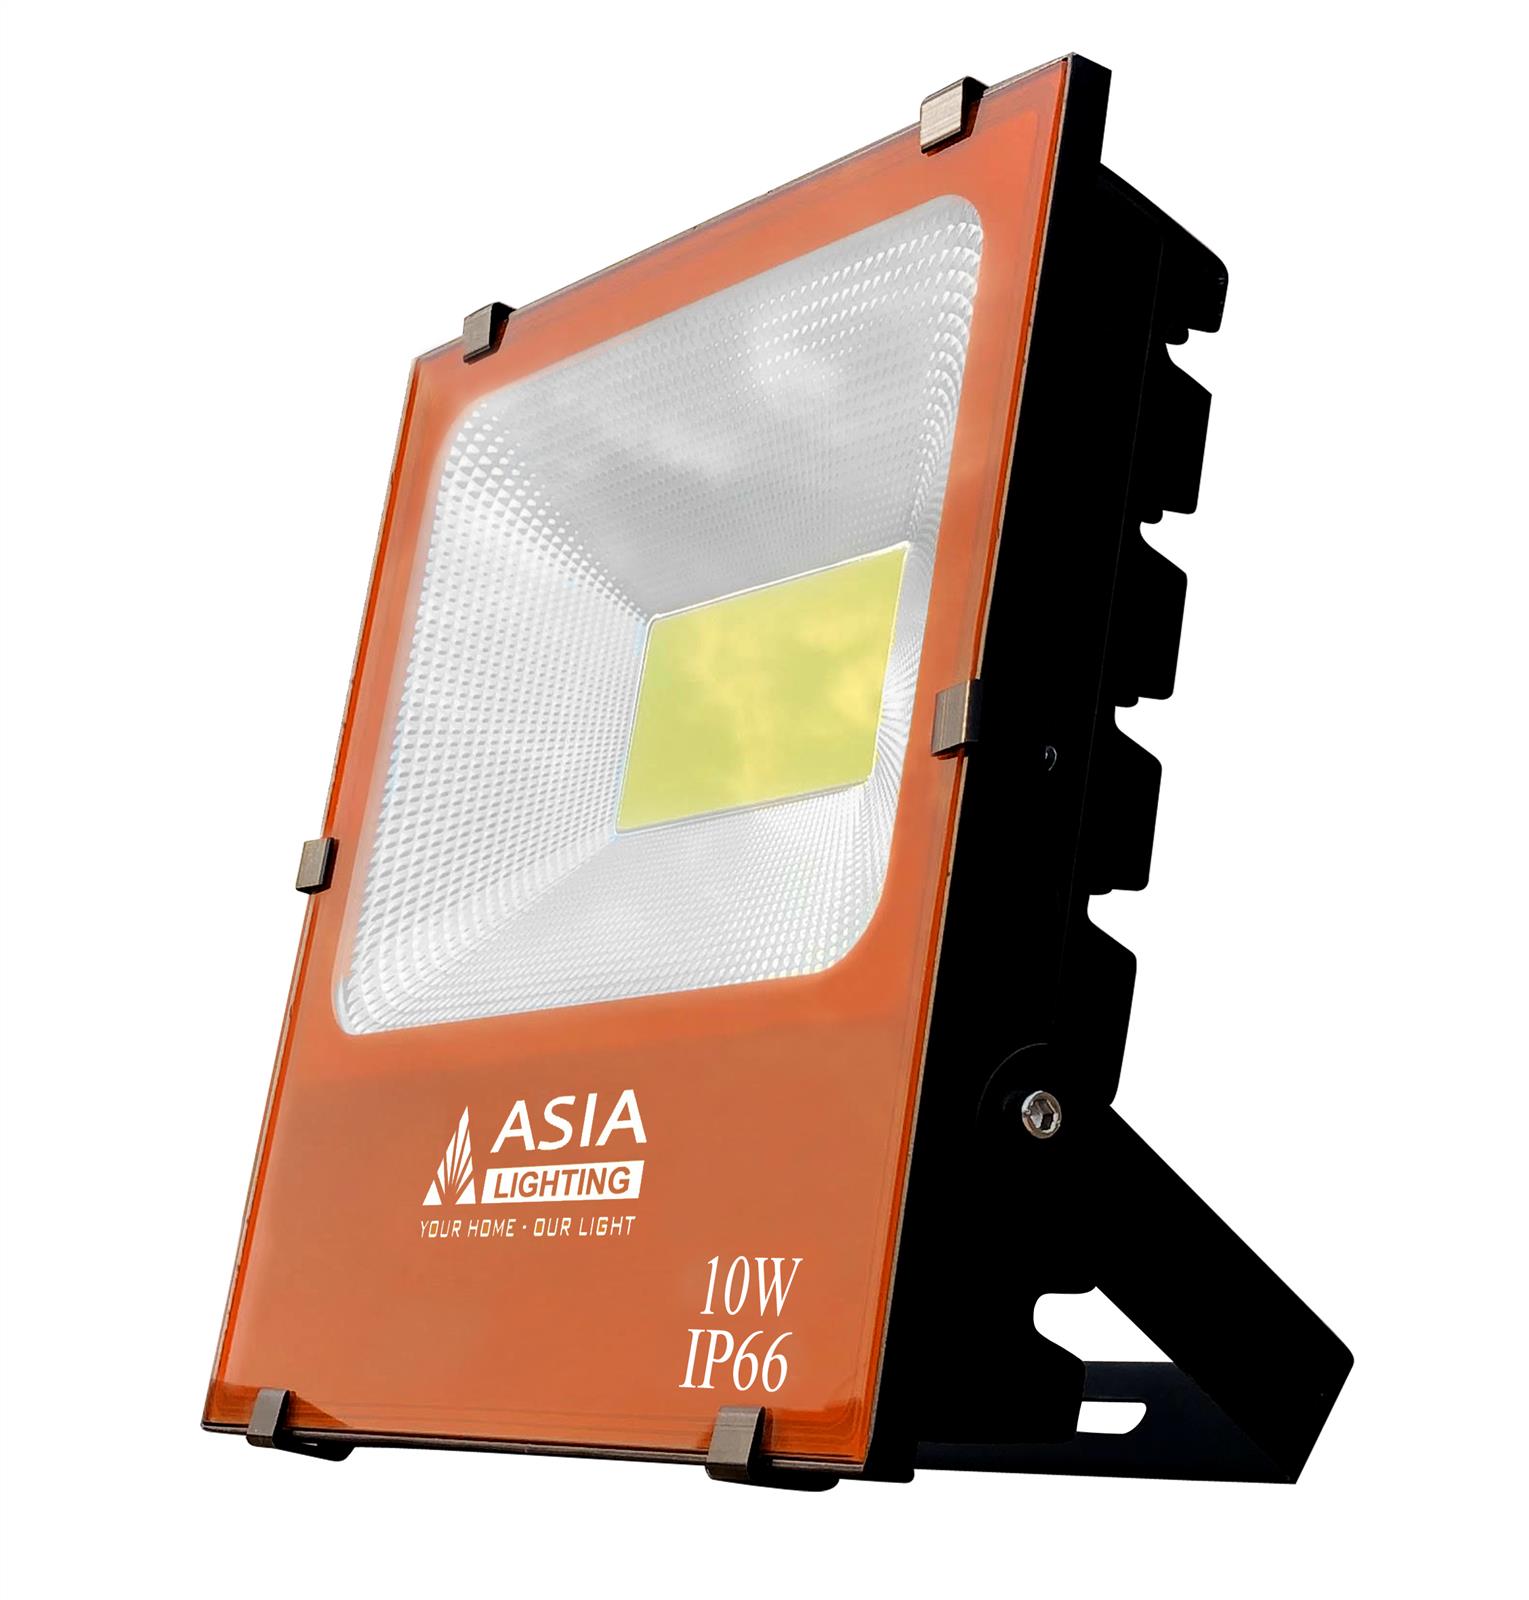 Đèn led pha ASIA chính hãng được bán với mức chiết khấu tốt nhất